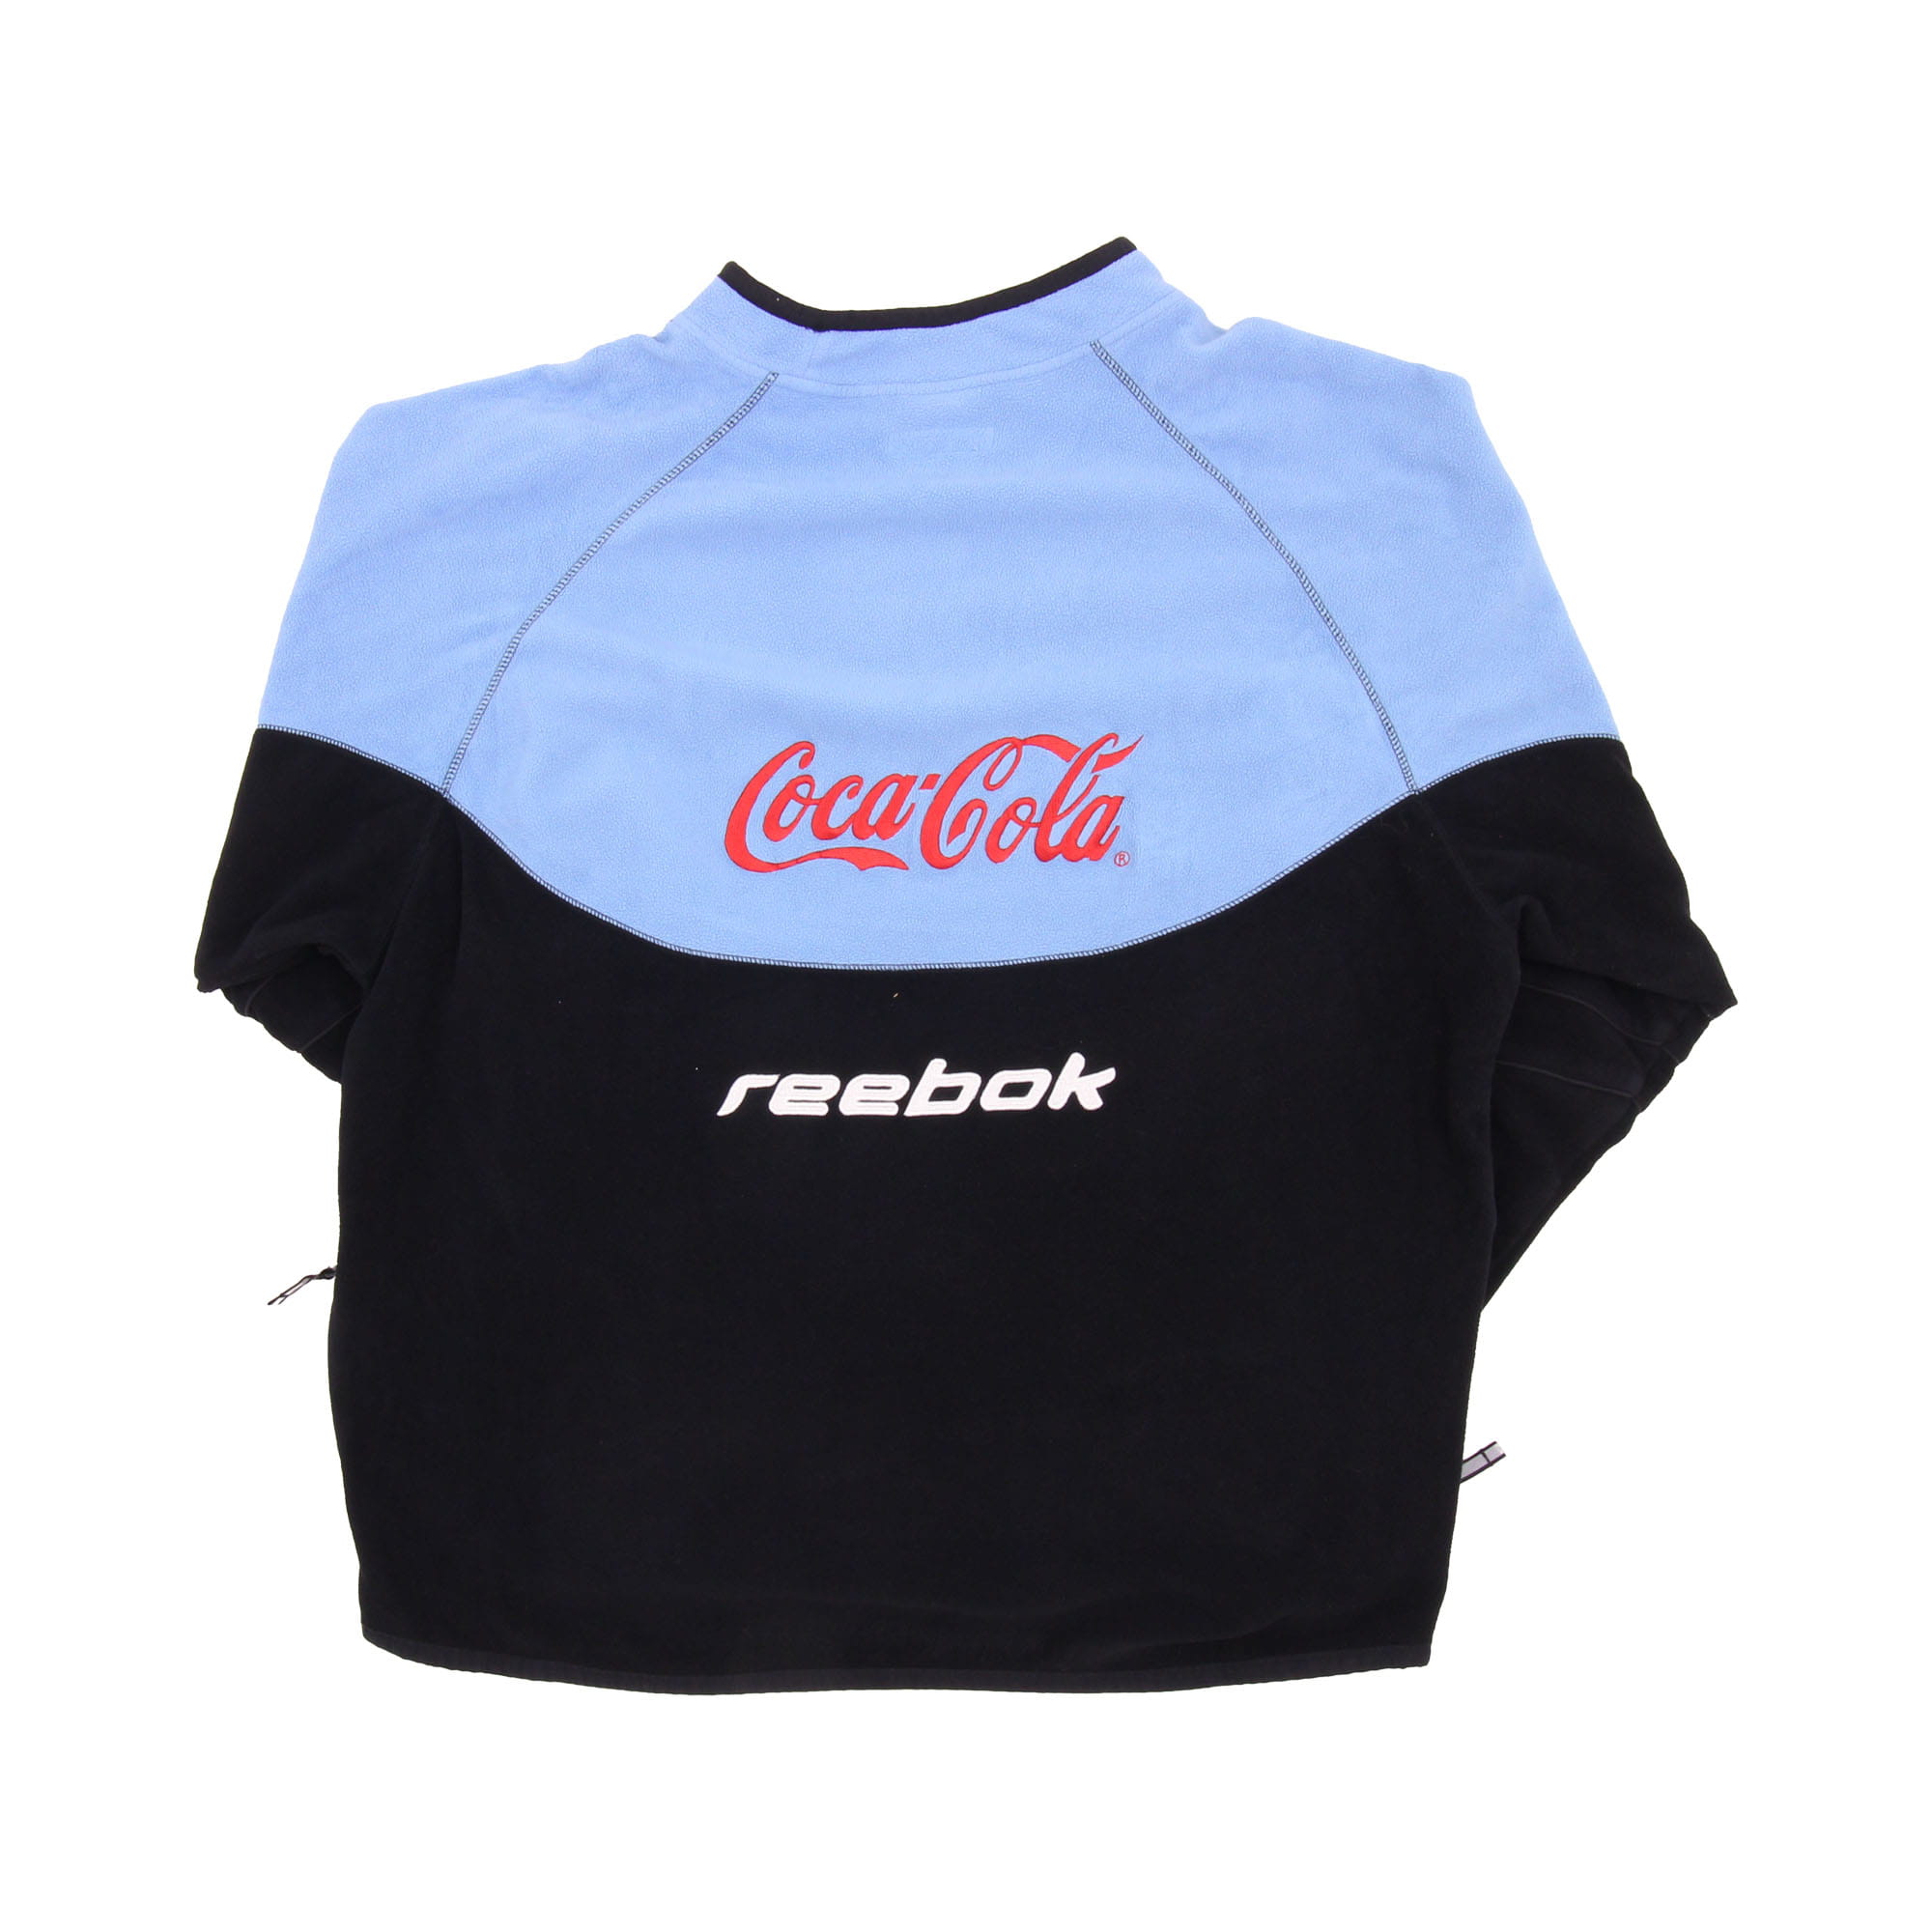 Reebok Coca Cola Center Logo Fleece -  XL